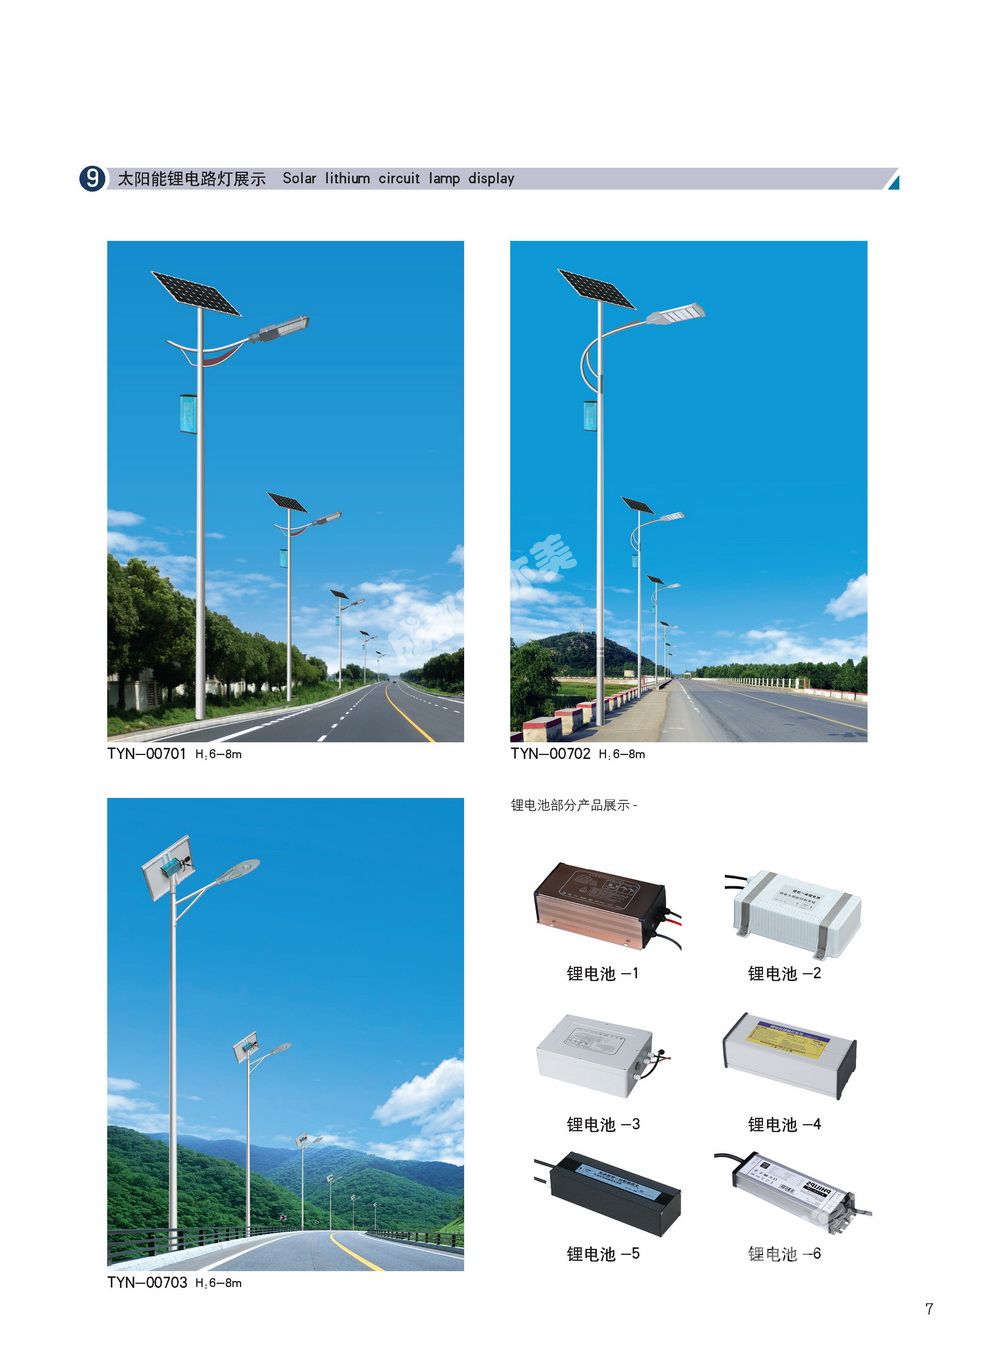 成都太阳能景观灯/家用太阳能路灯设计 生产 销售 安装一体